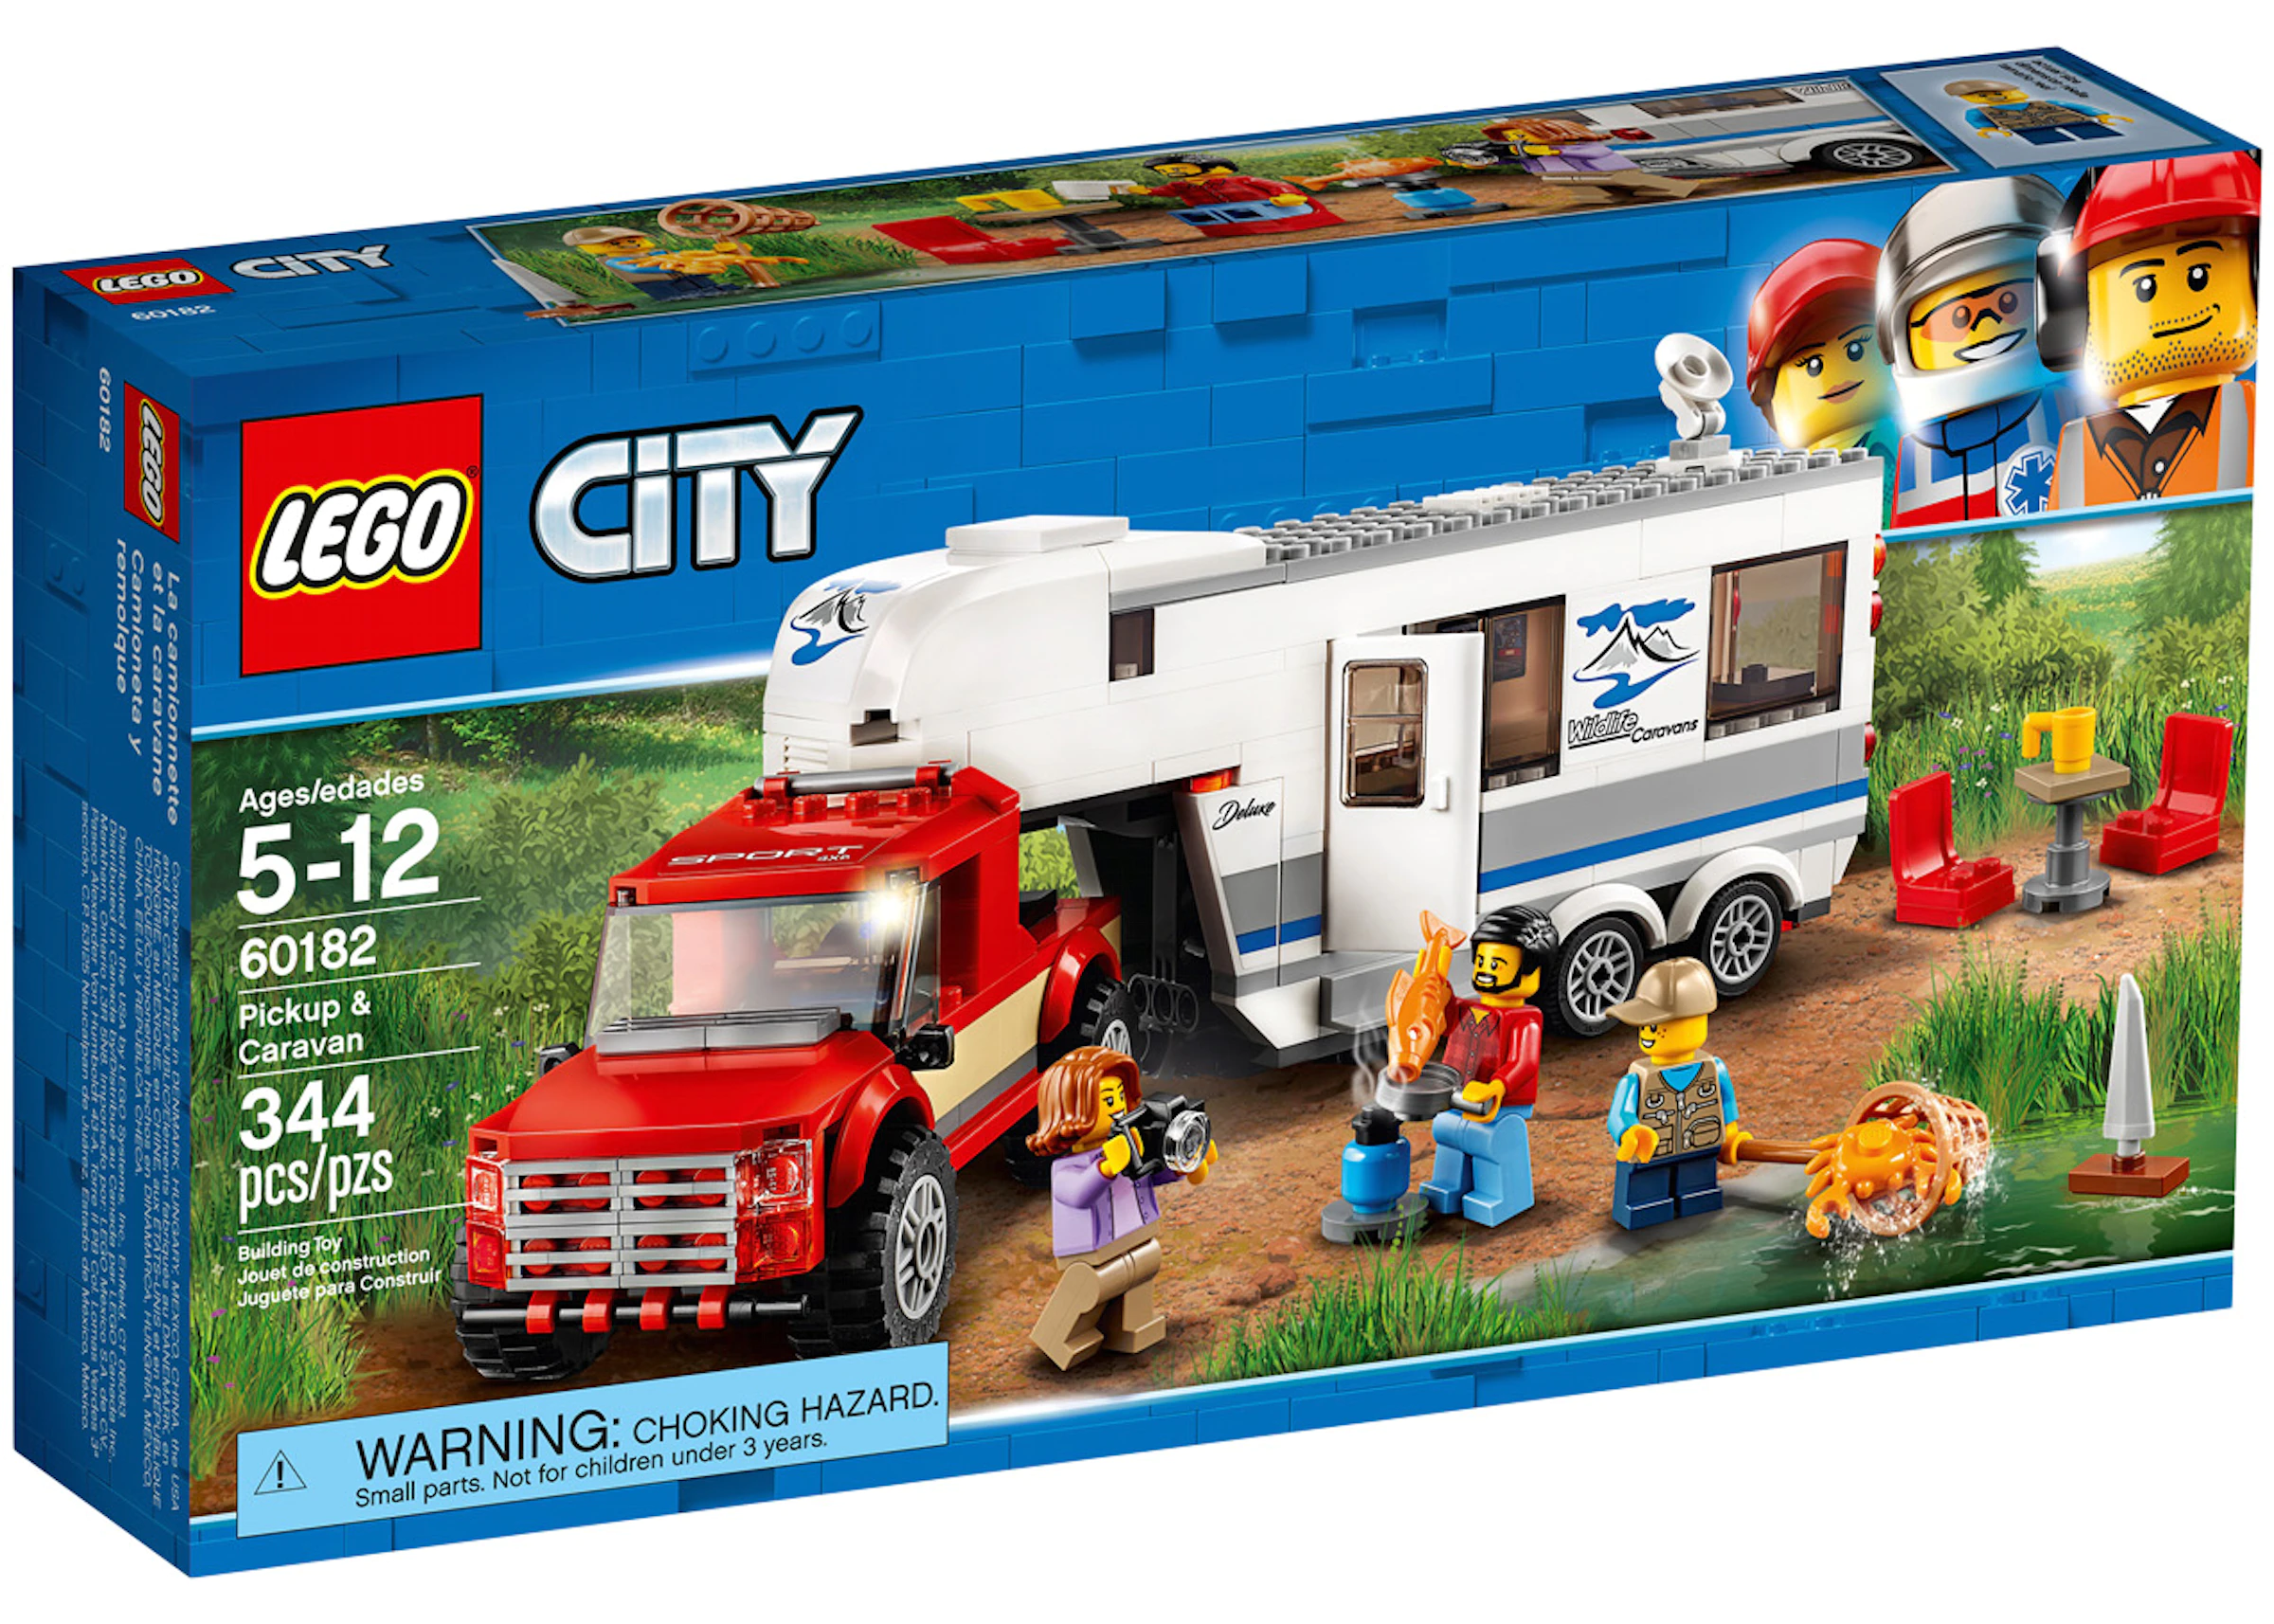 det er nytteløst Ekspedient Biprodukt LEGO City Pickup & Caravan Set 60182 - US